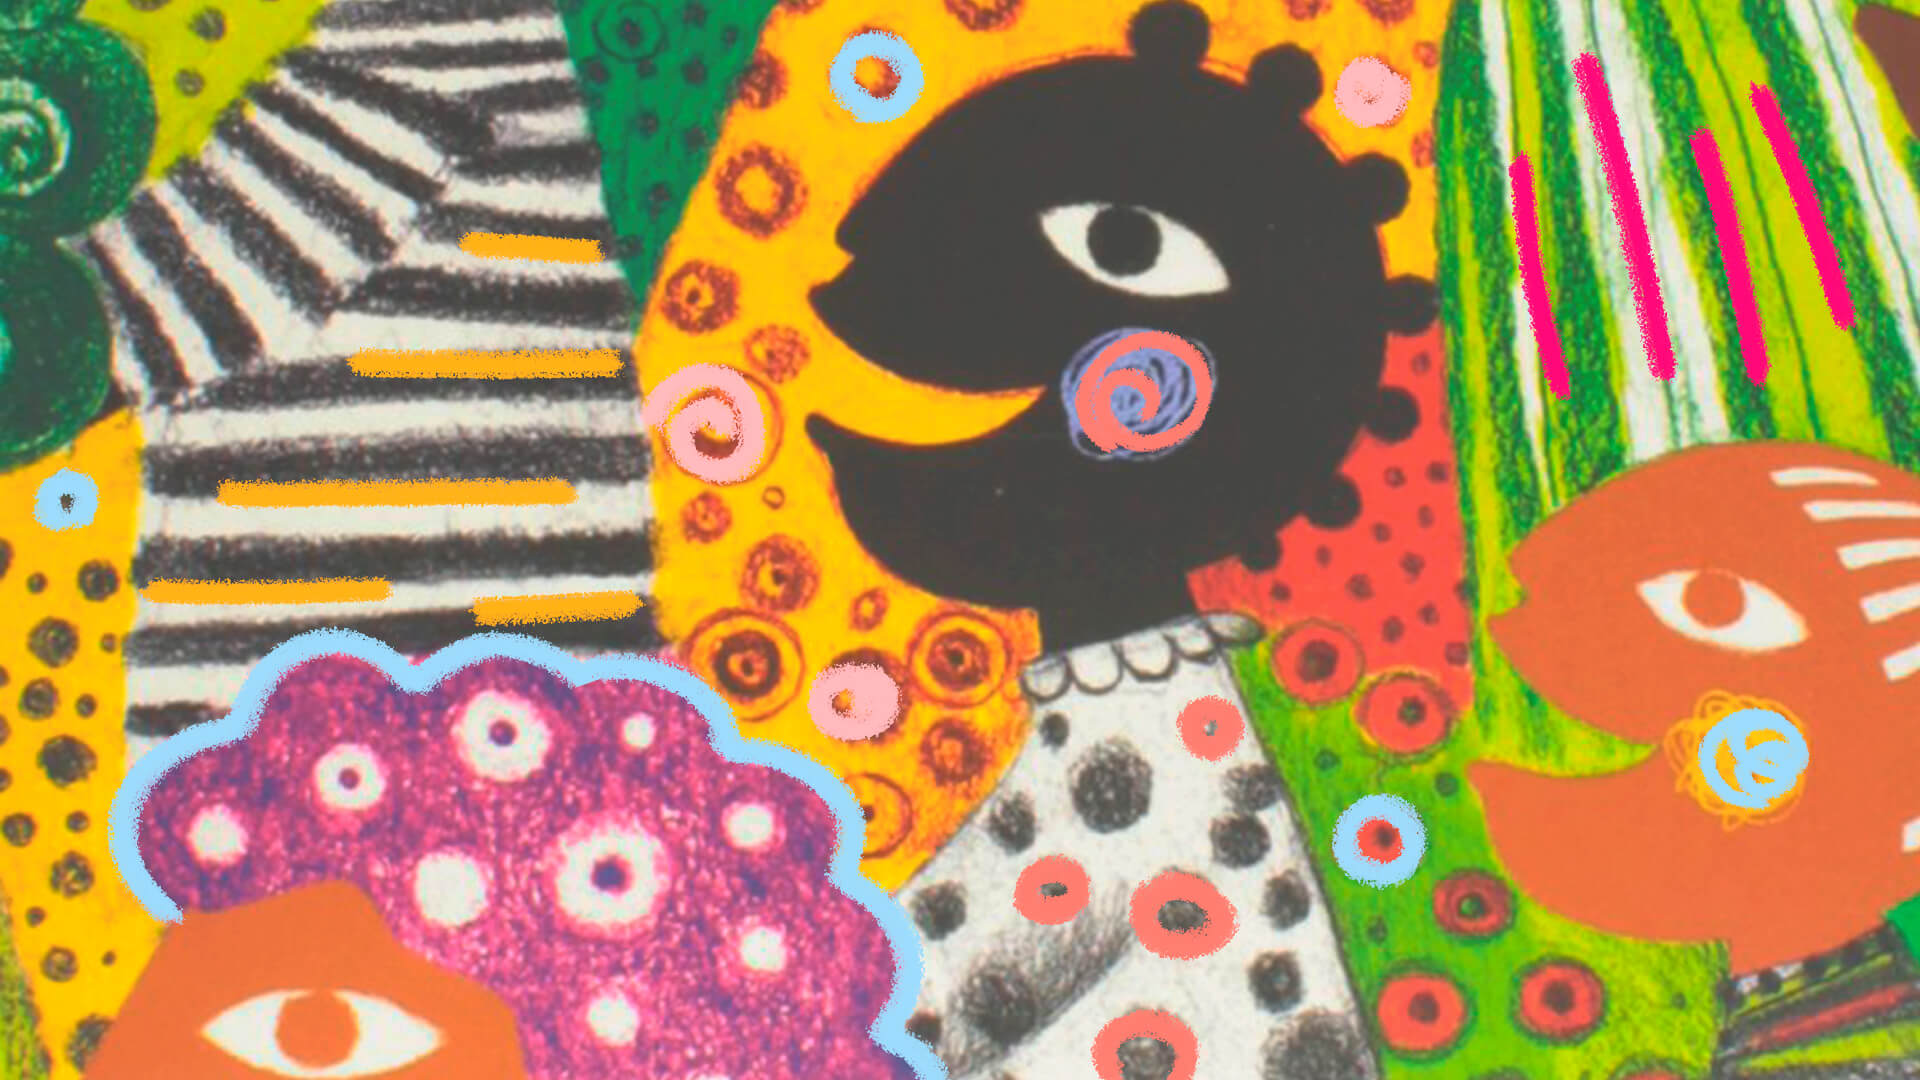 Livros de carnaval: na capa, Os Ibejis e o Carnaval. Uma criança negra sorri entre texturas coloridas.